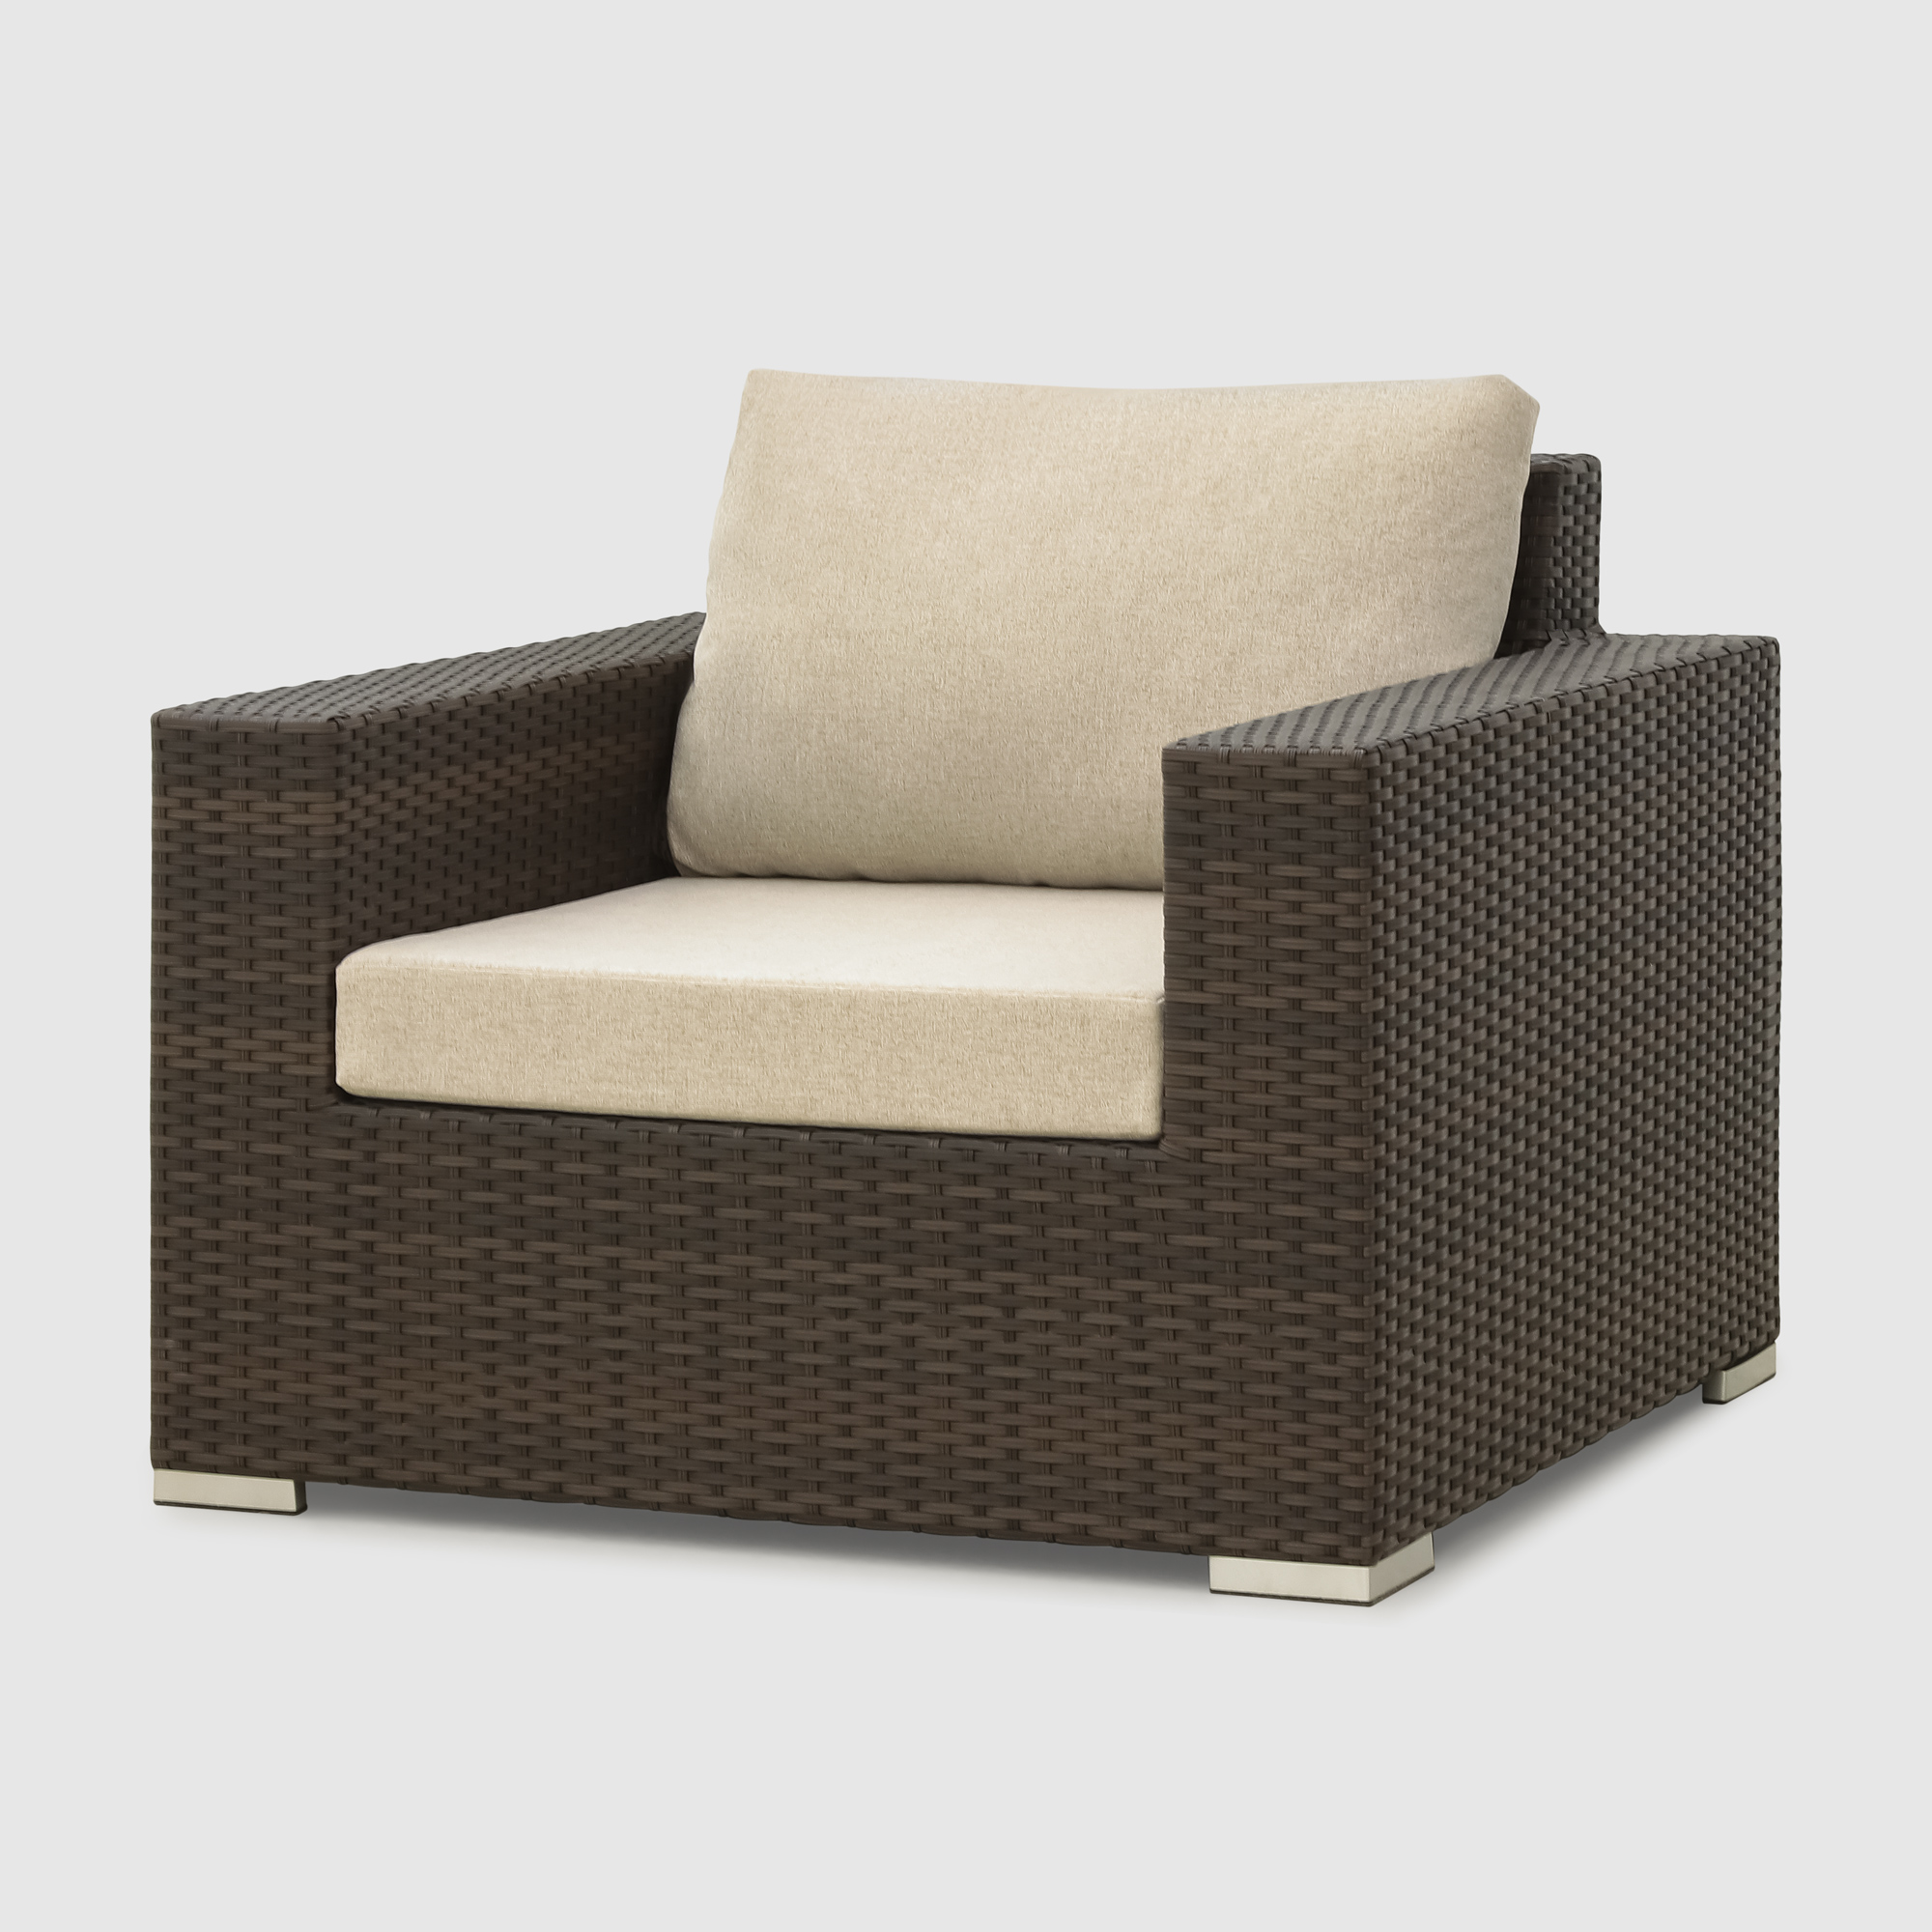 Комплект мебели Mavi rattan 4 предмета (041-036dky), цвет коричневый - фото 10